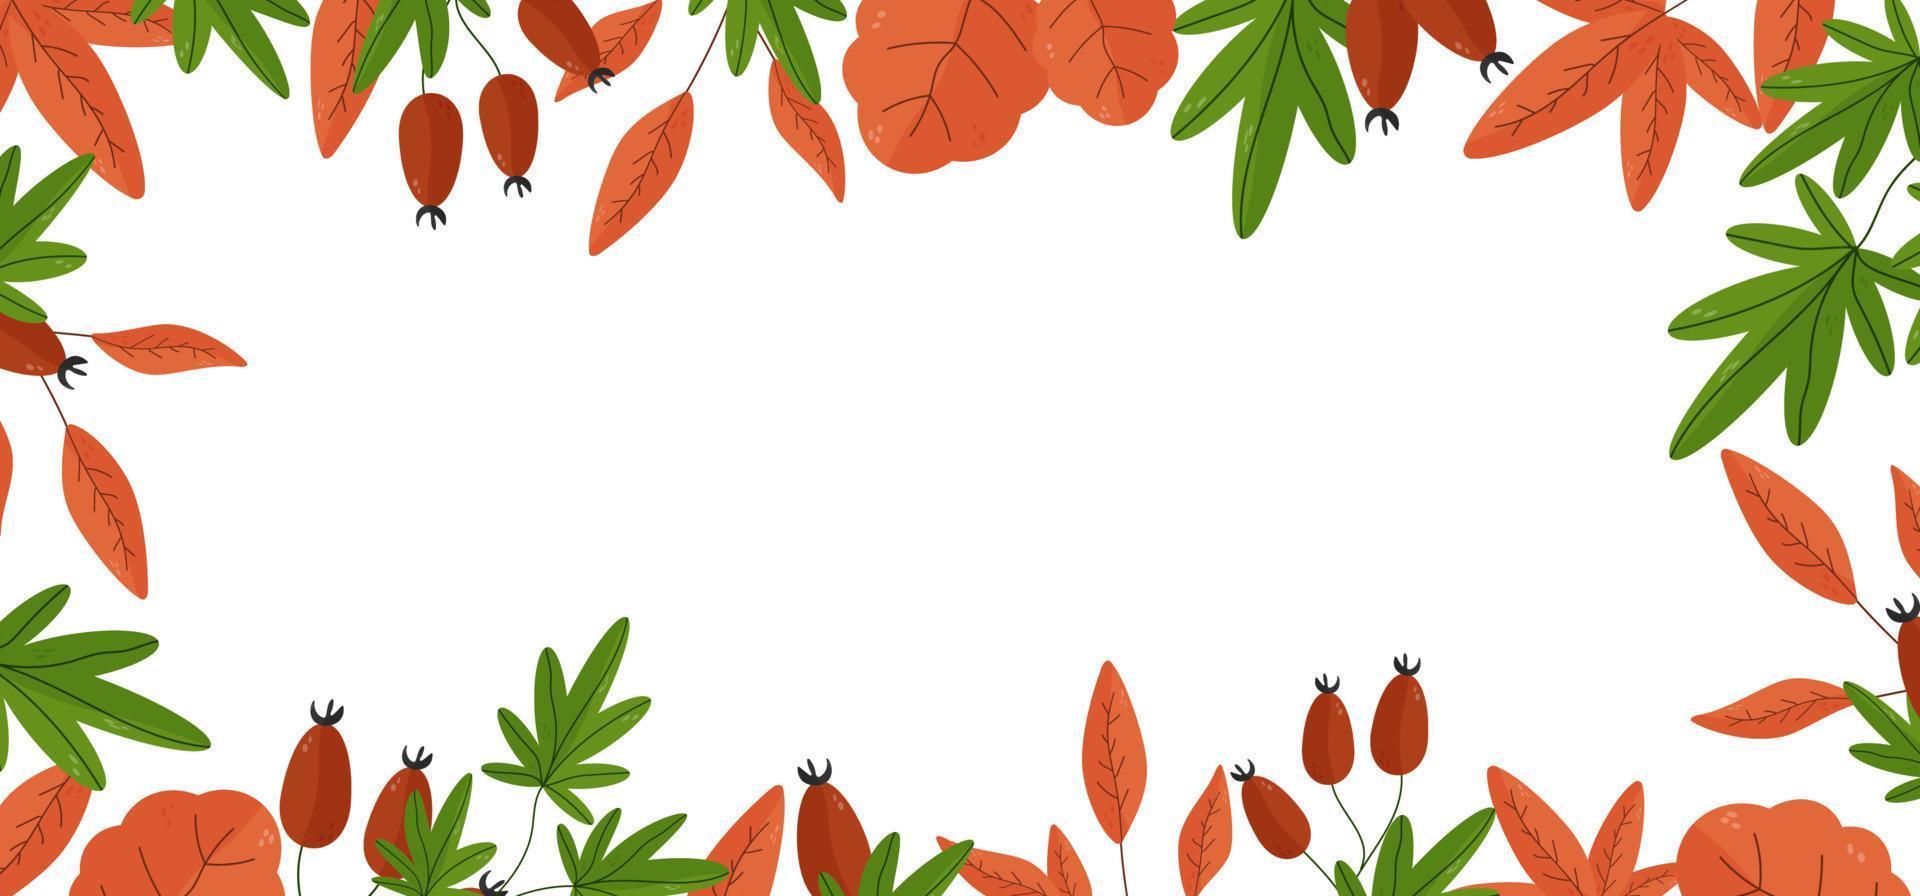 sfondo autunnale per testo con foglie, noci, ghiande, bacche, elementi stagionali. modello cornice quadrata. illustrazione vettoriale con elementi botanici